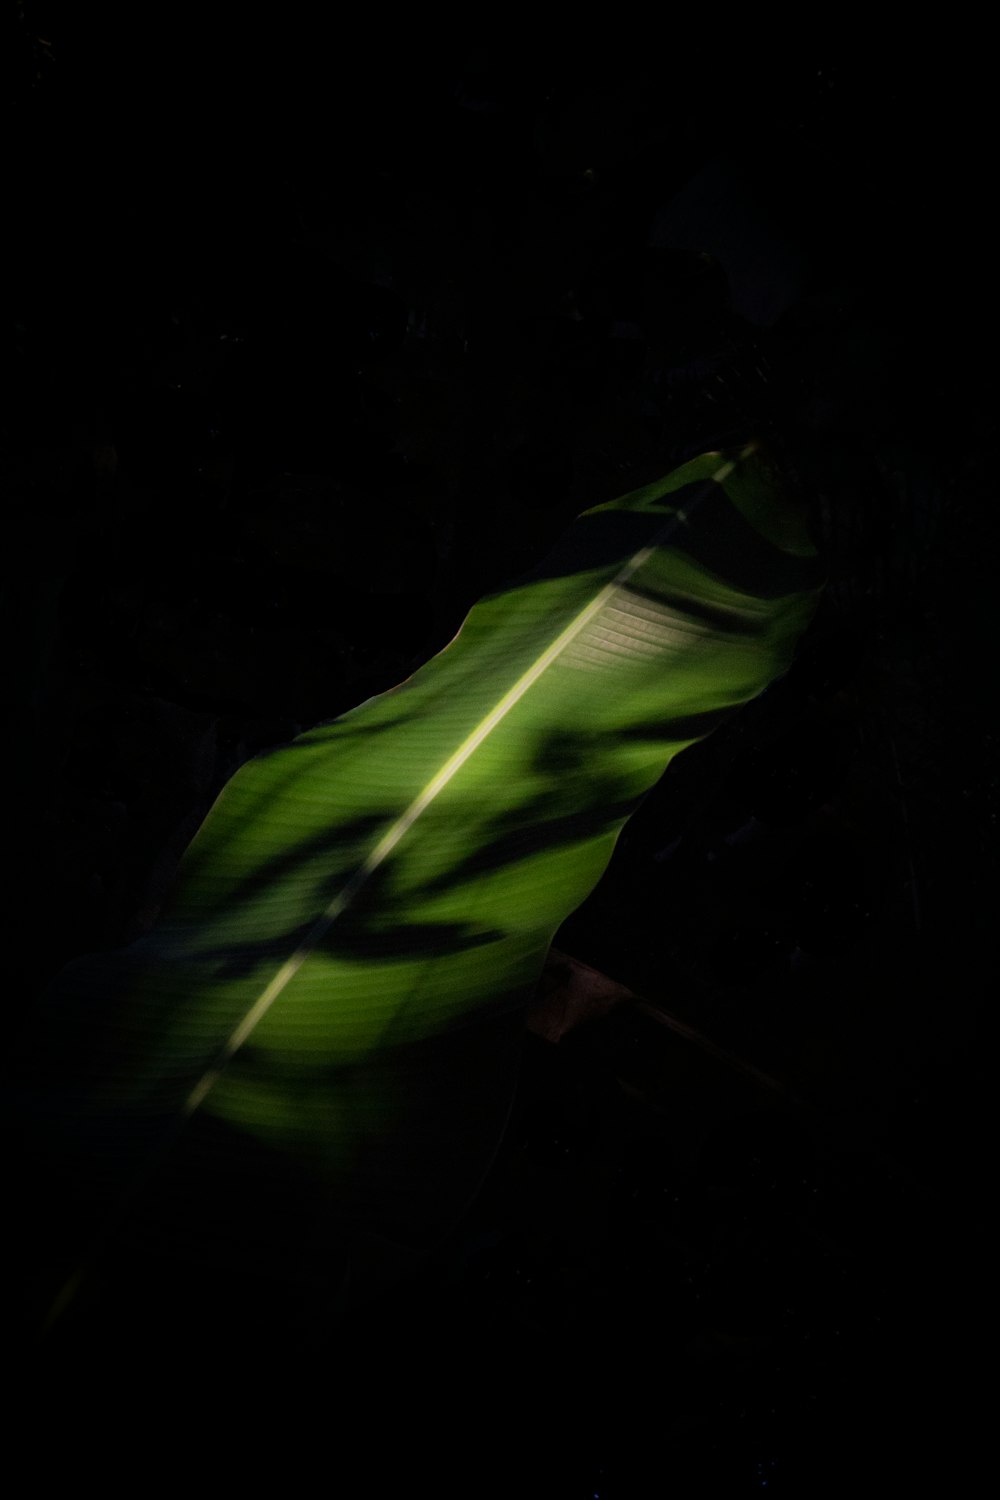 Ein grünes Blatt im Dunkeln auf schwarzem Hintergrund